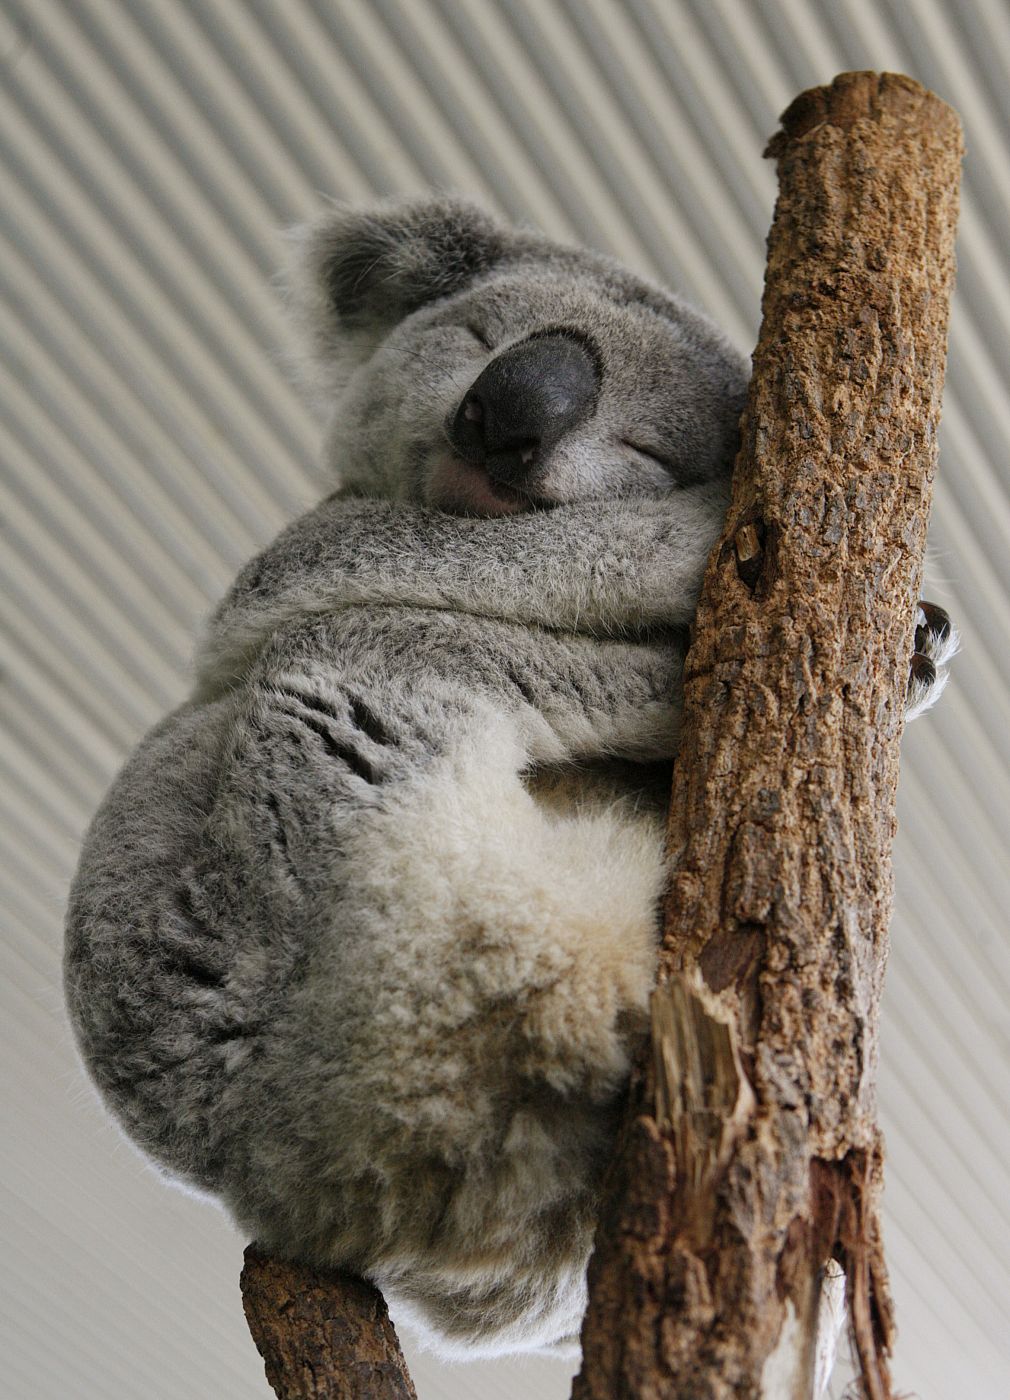 El koala a diferencia de otros marsupiales arborícolas o tiene cola. Sin embargo, tiene un excelente sentido del equilibrio, lo que le permite dormir tranquilamente en los árboles.